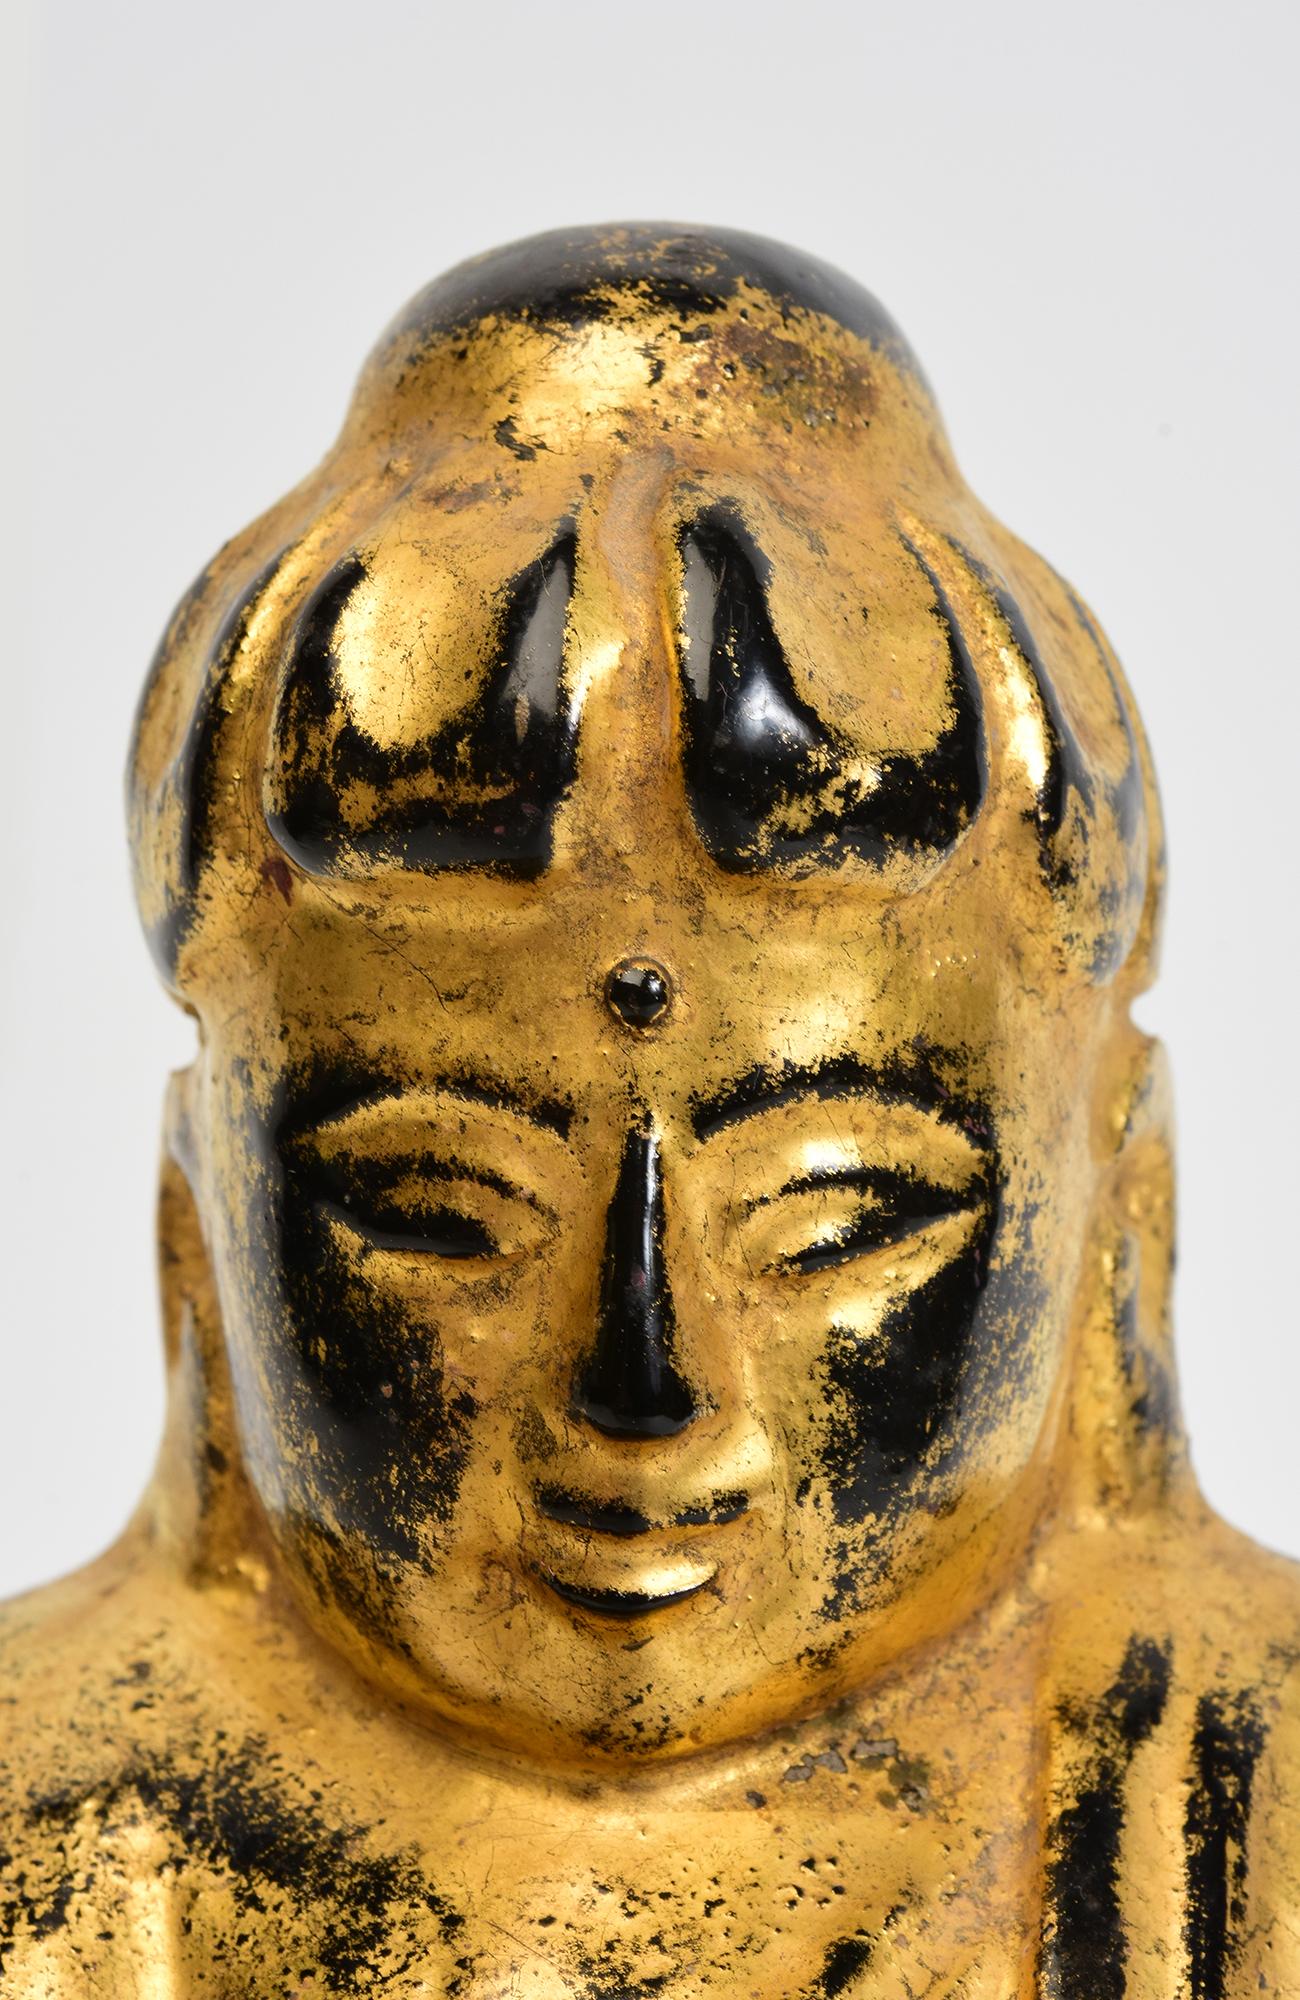 Antiker burmesischer Lotus-Buddha aus Holz, sitzend in der Mara-Vijaya-Haltung (die Erde zum Zeugen rufend), auf einem Sockel, mit vergoldetem Gold.

Alter: Birma, Mandalay-Periode, 19. Jahrhundert
Größe: Höhe 25 C.M. / Breite 13.6 C.M. / Tiefe 13.8